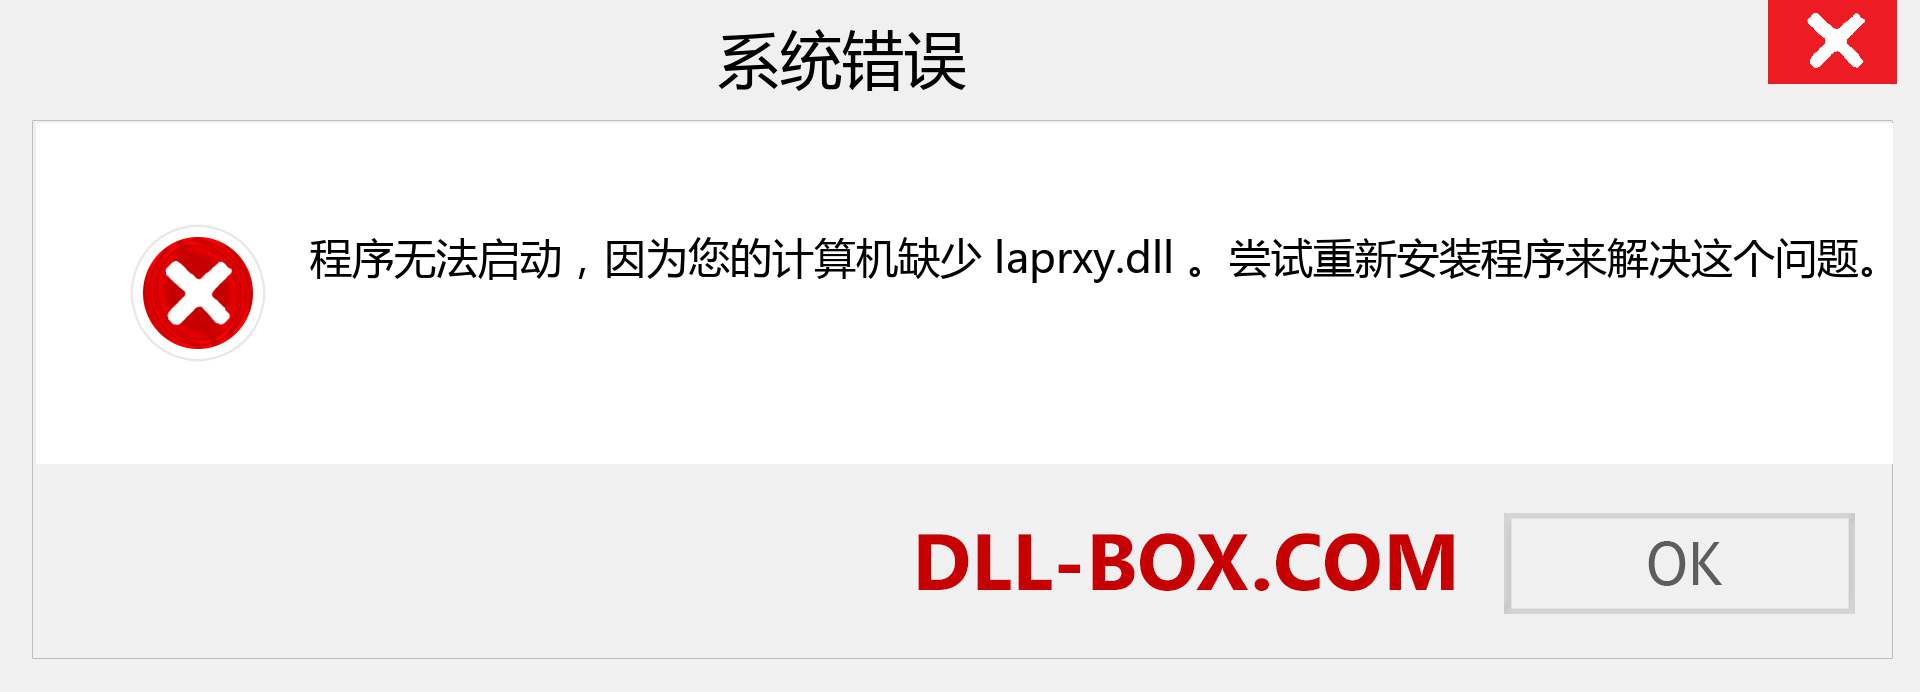 laprxy.dll 文件丢失？。 适用于 Windows 7、8、10 的下载 - 修复 Windows、照片、图像上的 laprxy dll 丢失错误